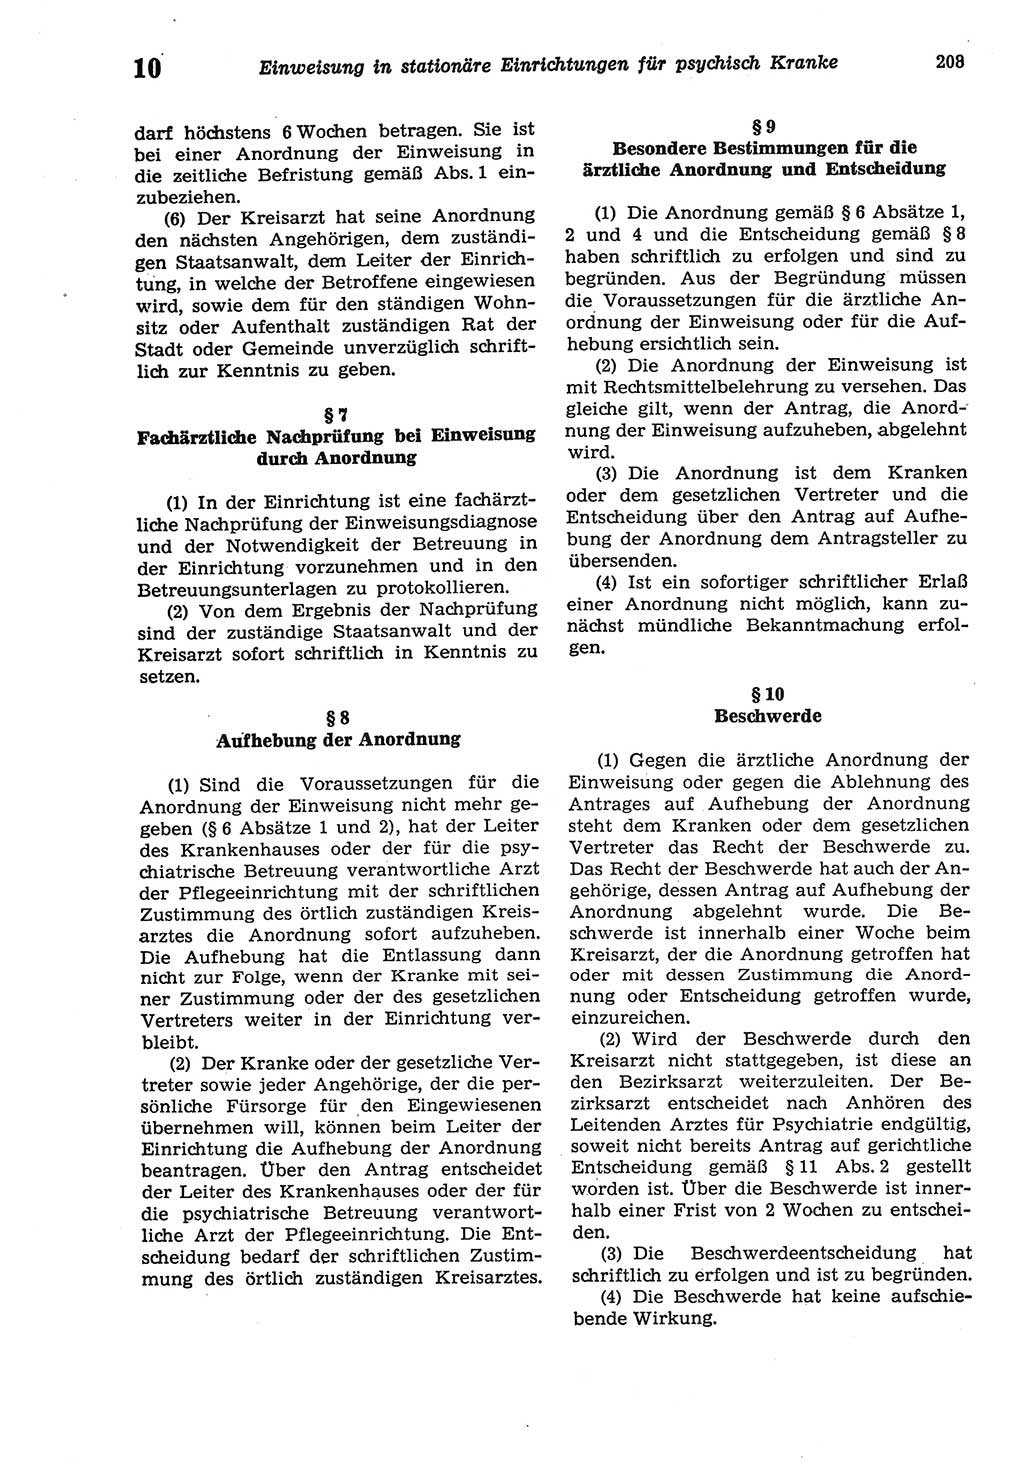 Strafprozeßordnung (StPO) der Deutschen Demokratischen Republik (DDR) sowie angrenzende Gesetze und Bestimmungen 1977, Seite 208 (StPO DDR Ges. Best. 1977, S. 208)